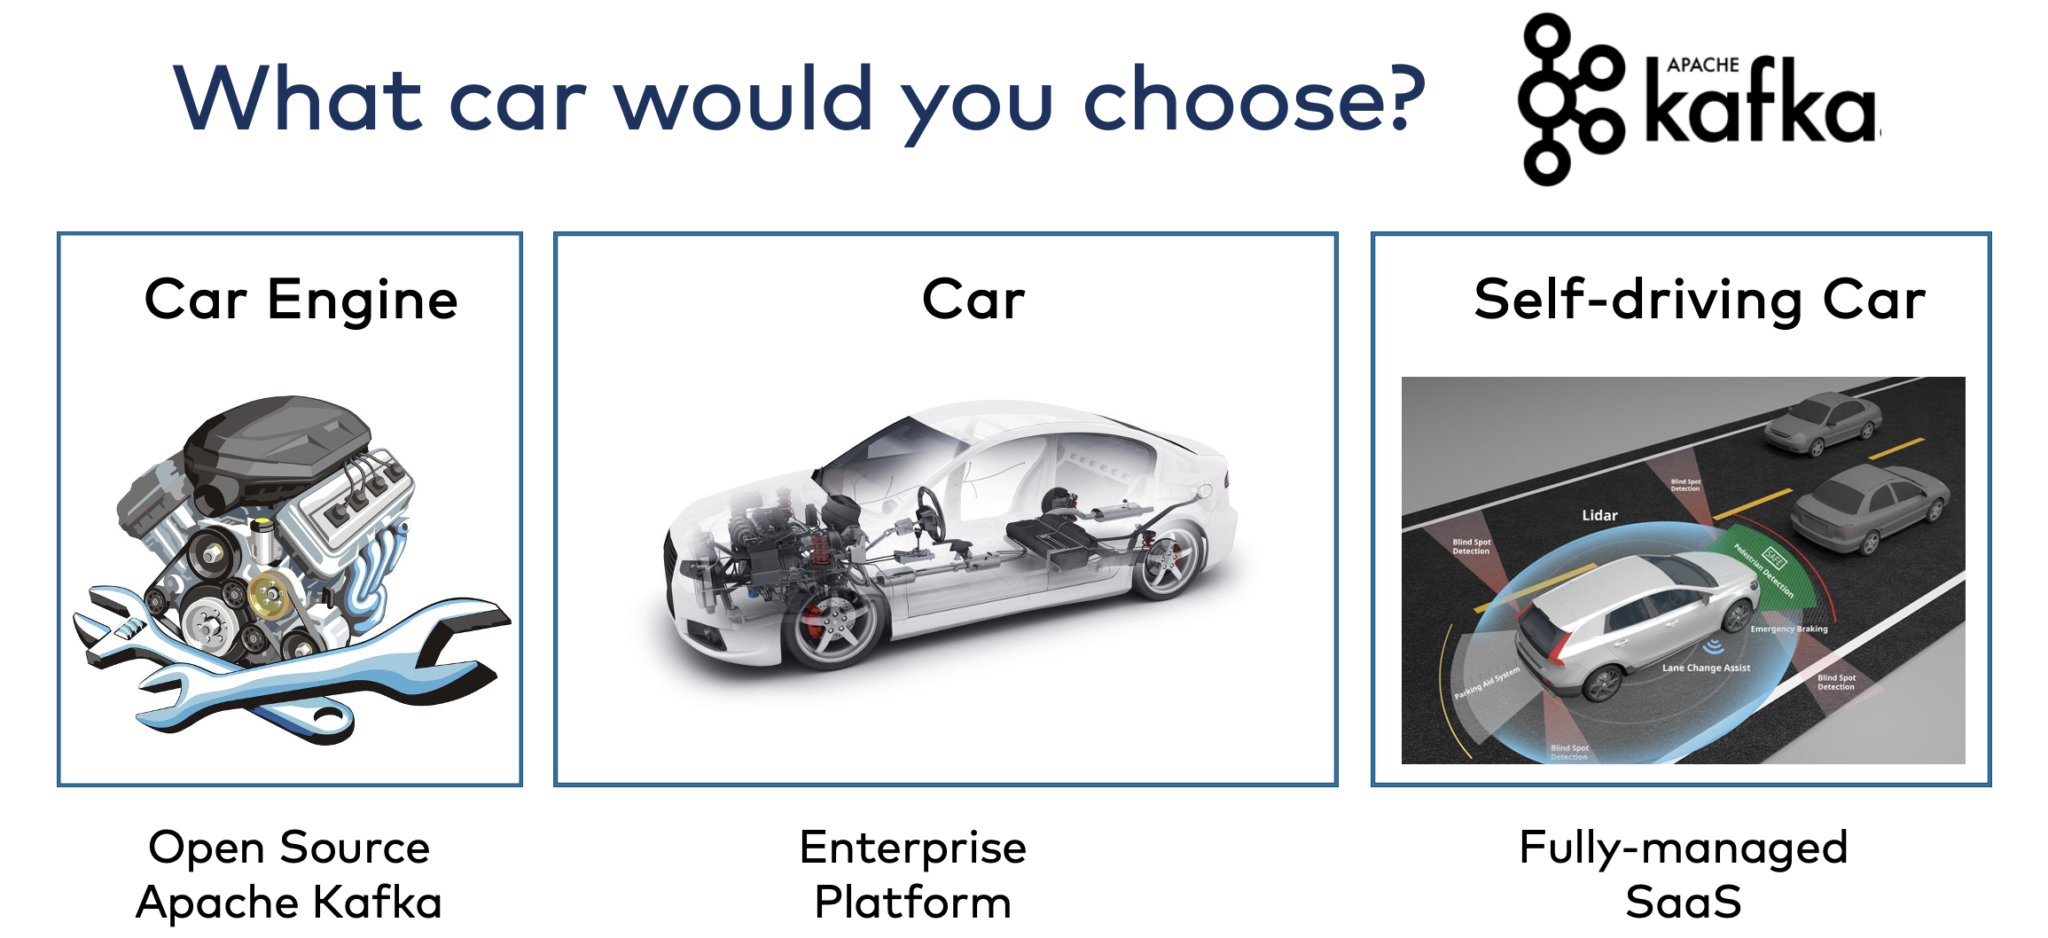 jaki samochód by pan wybrał?